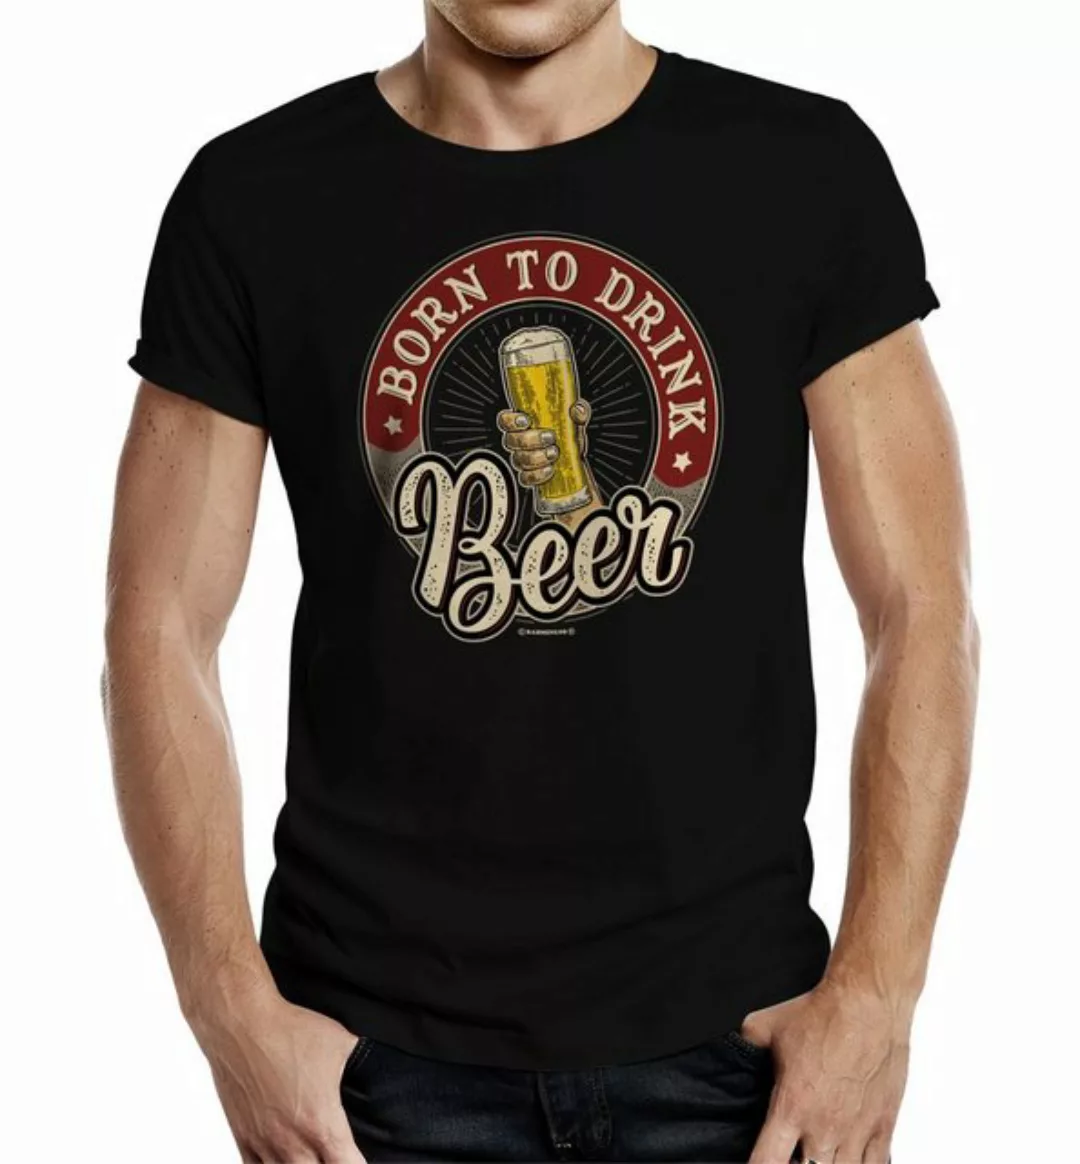 Rahmenlos T-Shirt als Geschenk oder Outfit für die Party - Born to Drink Be günstig online kaufen